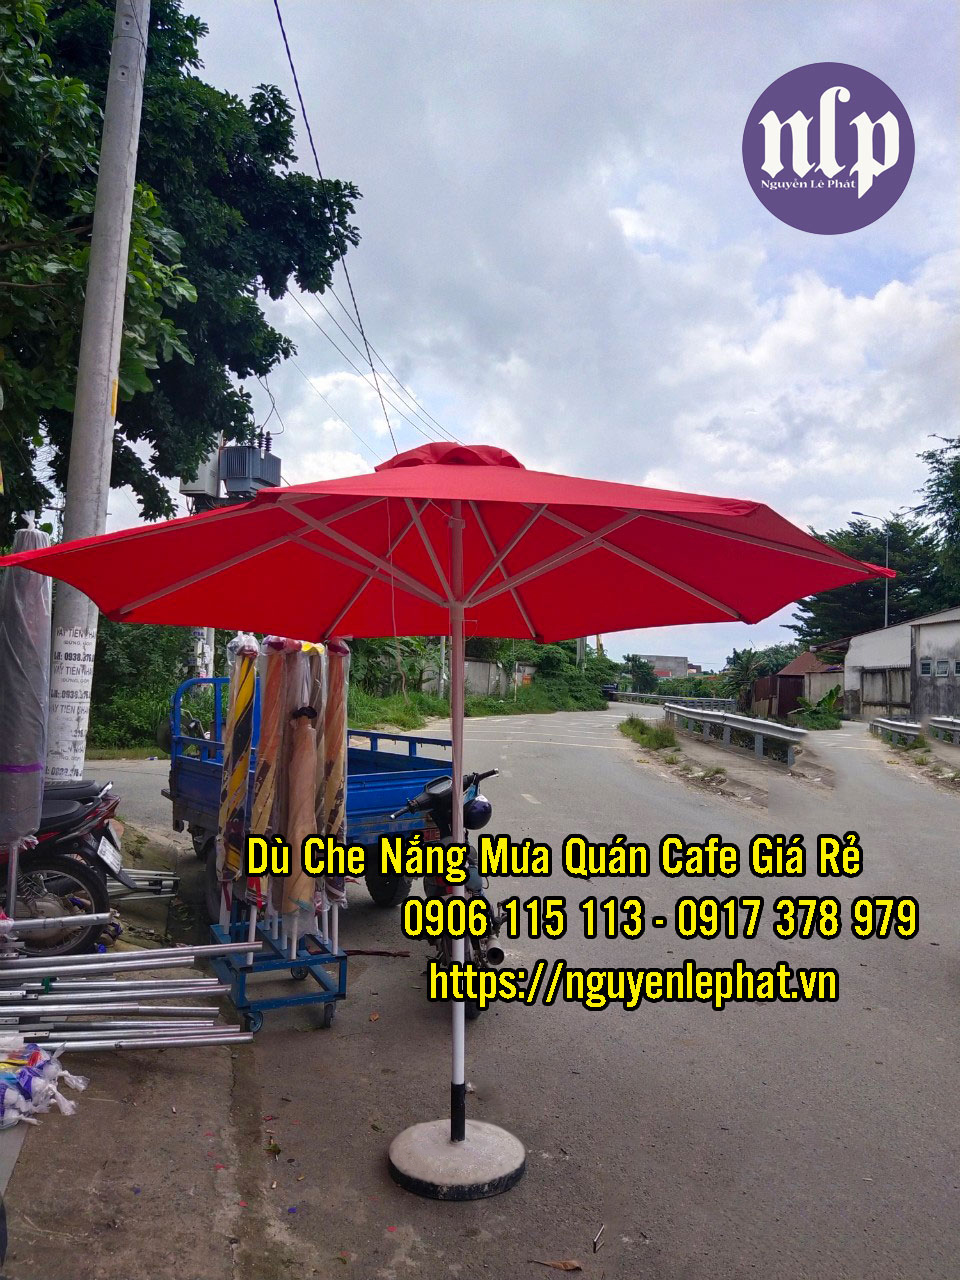 Dù Che Quán Cafe tại Tây Ninh, Địa điểm bán dù che nắng mưa quán cafe giá rẻ đẹp nhất tại Tây Ninh Mẫu Dù Cafe 2021